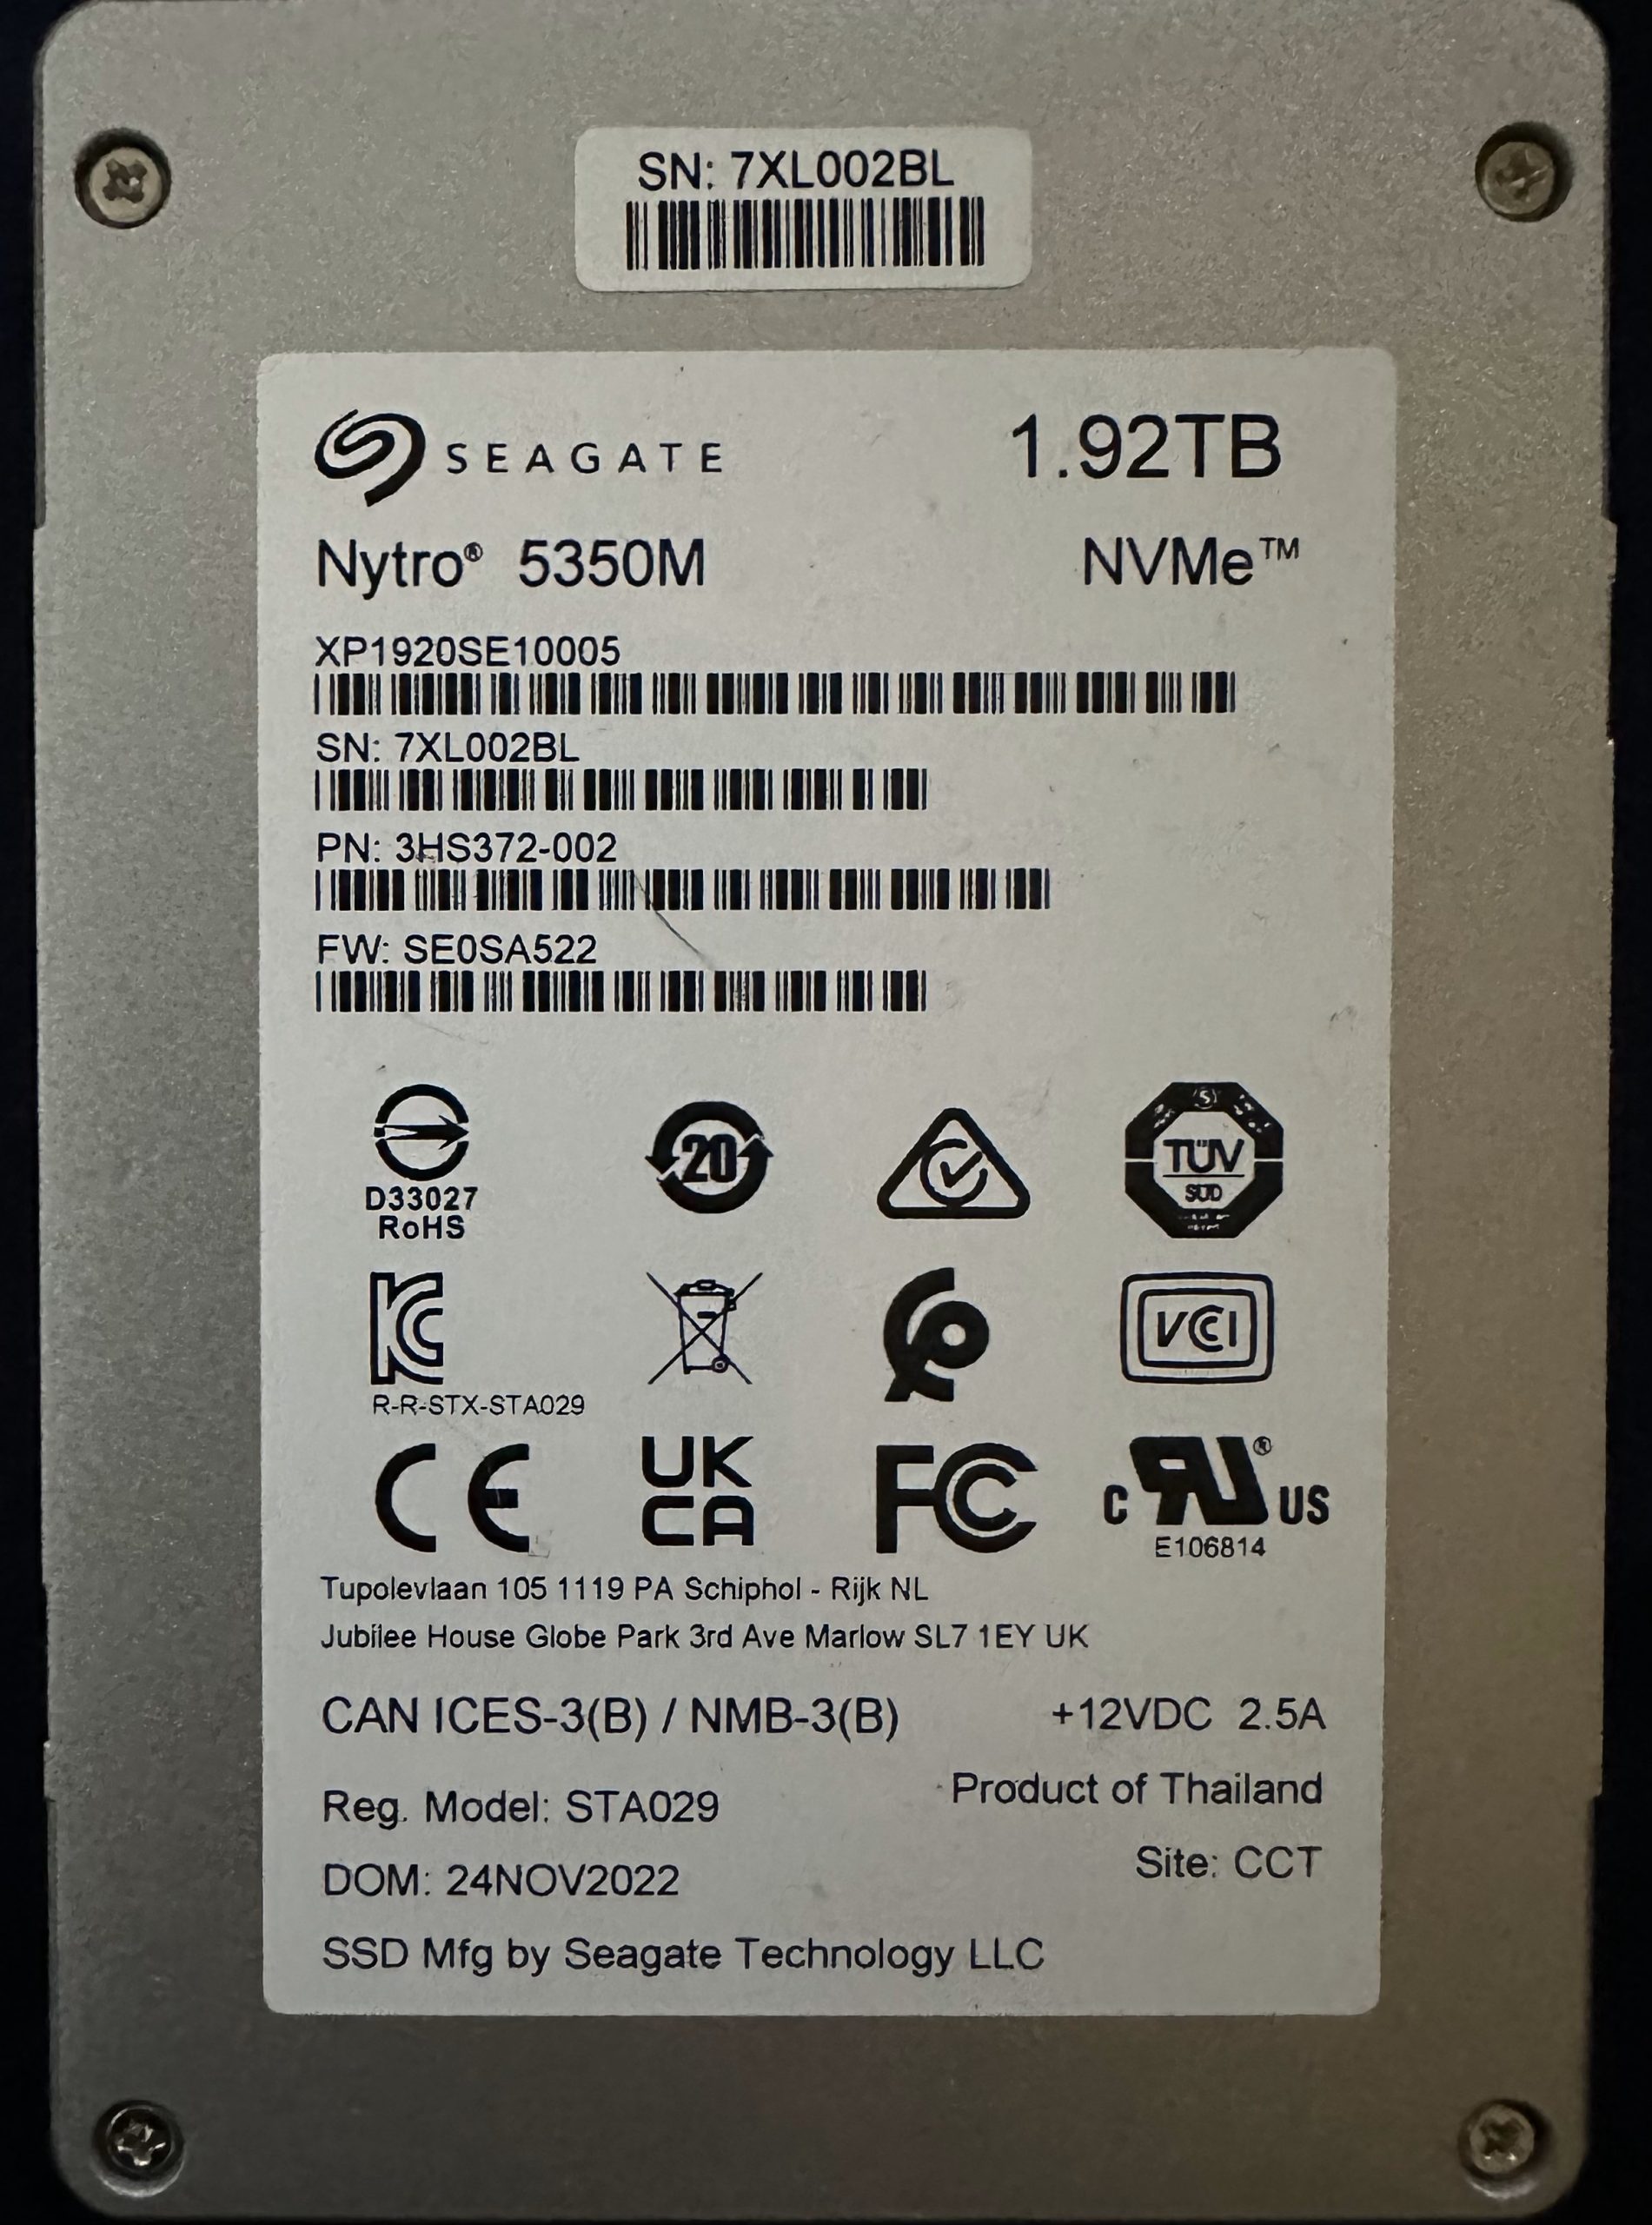 Seagate Nytro 5350M NVMe SAS 1.92TB Enterprise SSD 